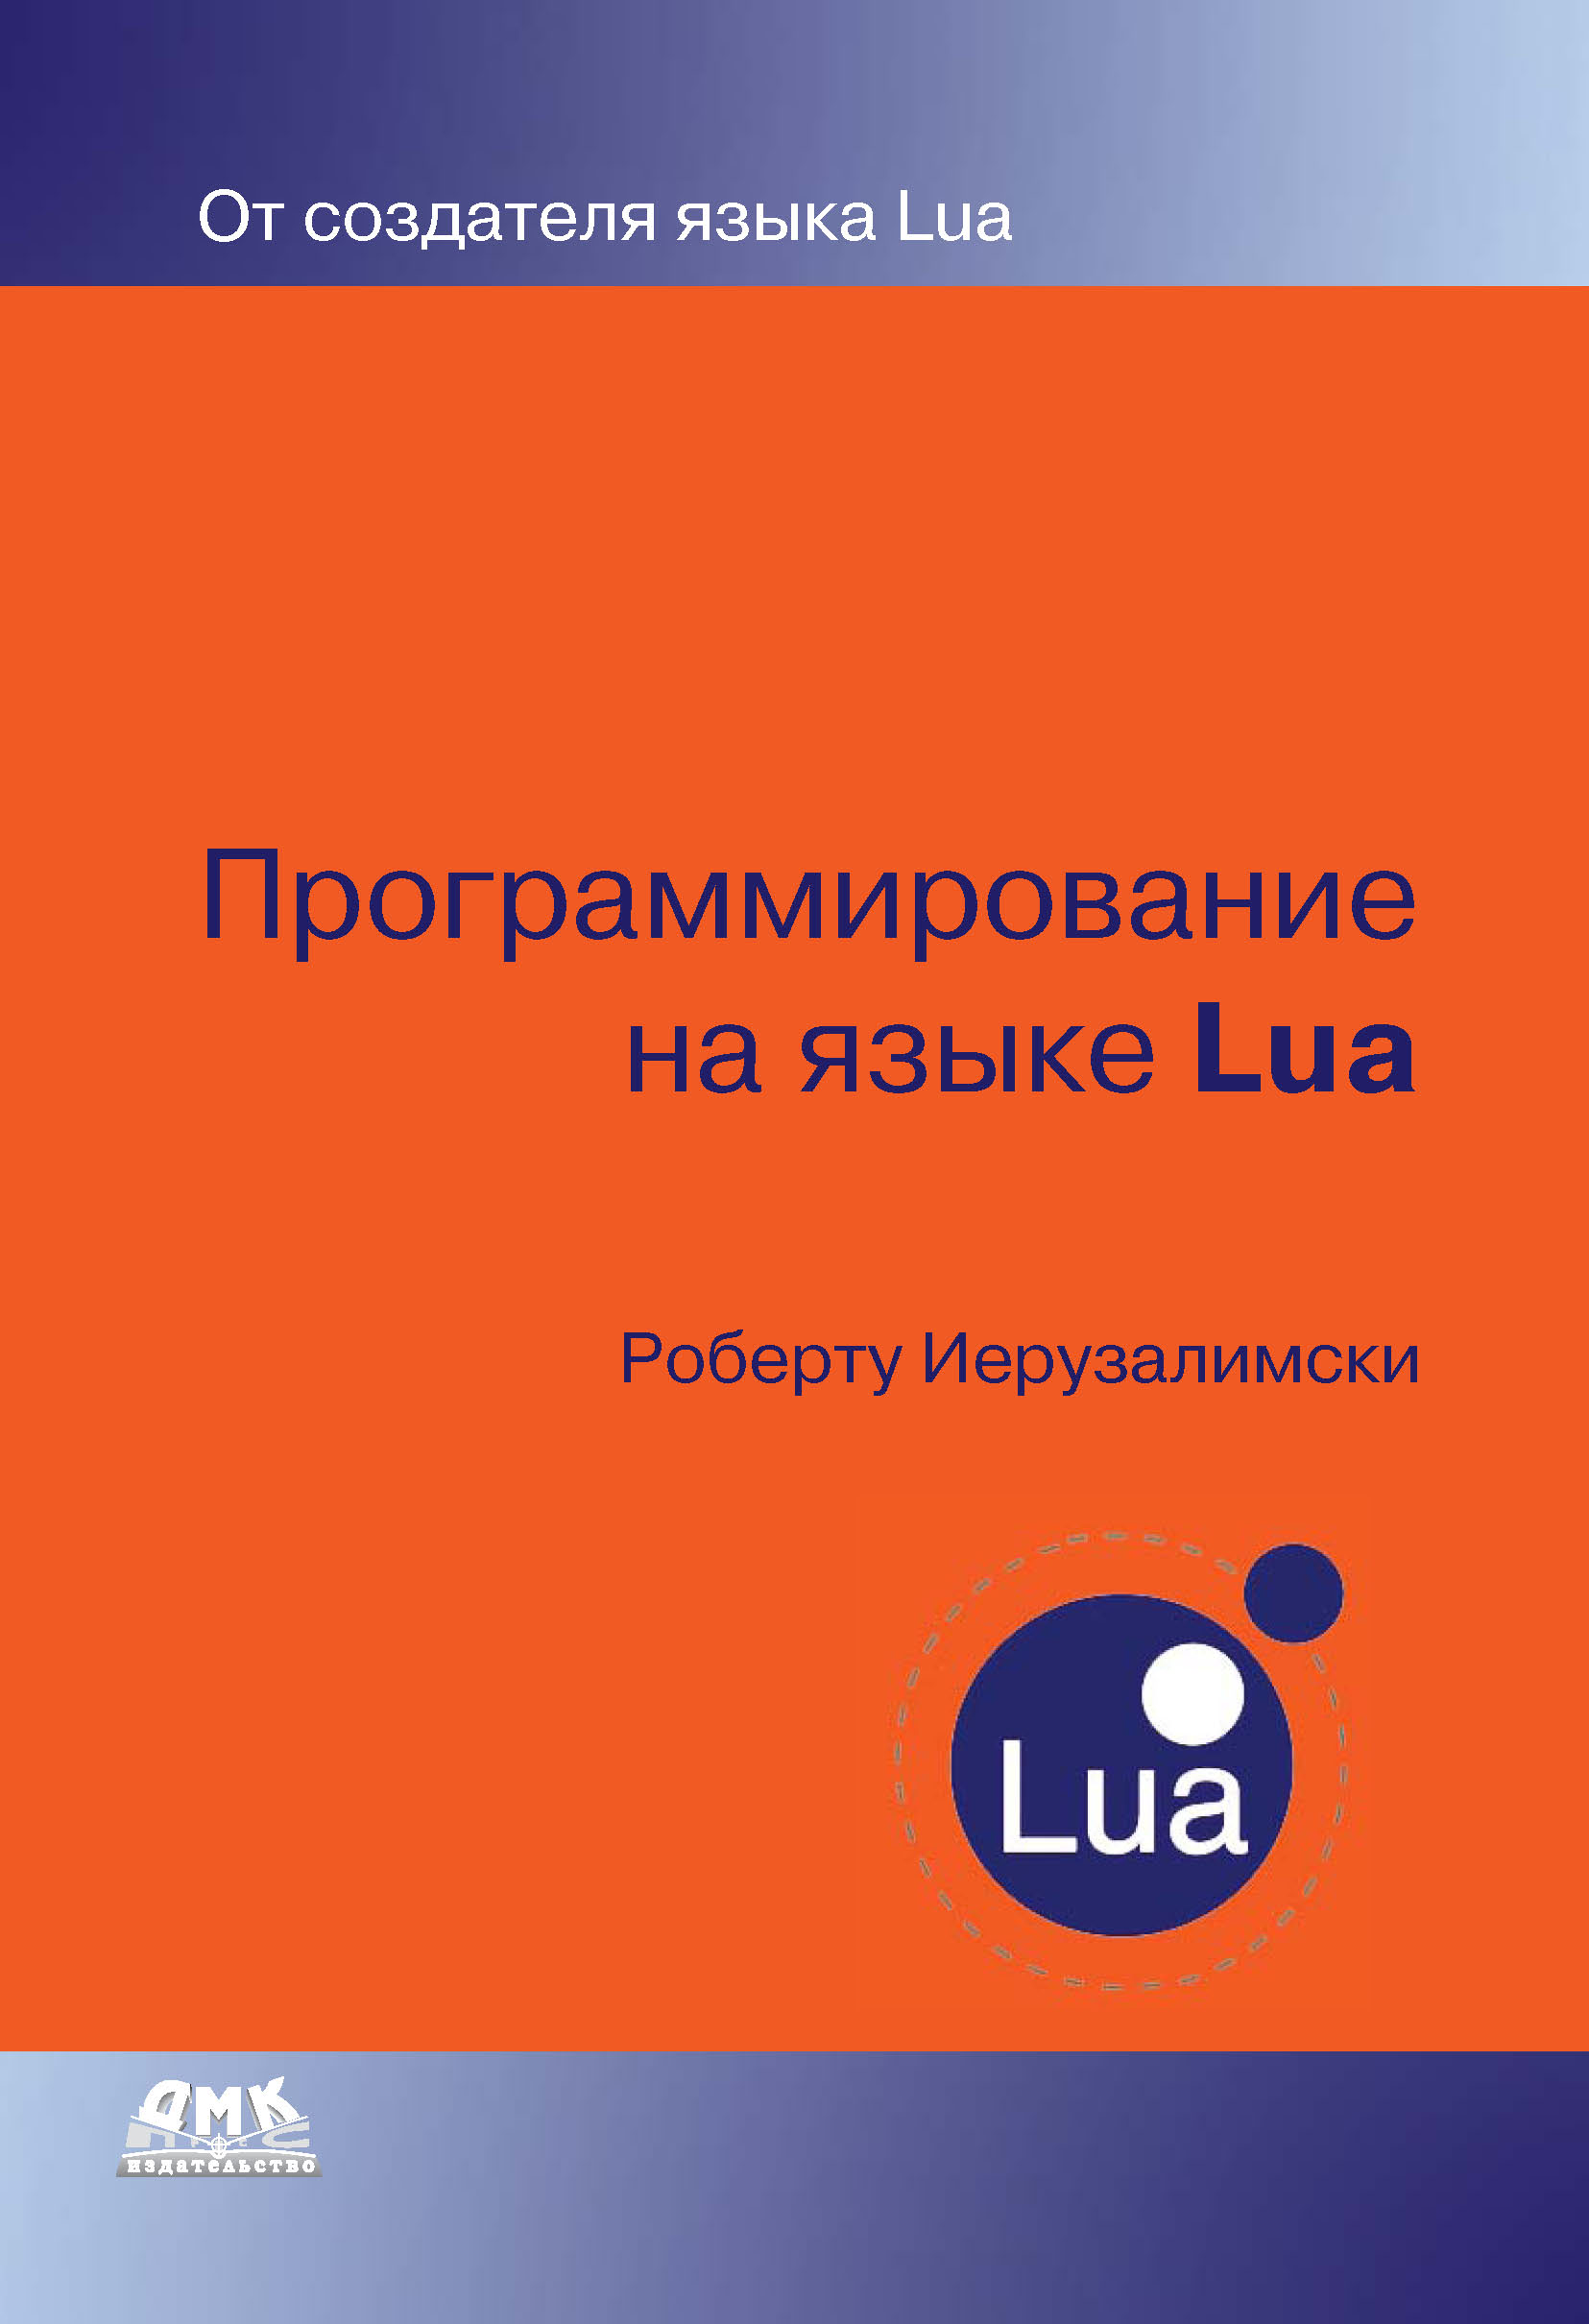 Книга  Программирование на языке Lua созданная Роберту Иерузалимски, Алексей Викторович Боресков может относится к жанру зарубежная компьютерная литература, программирование. Стоимость электронной книги Программирование на языке Lua с идентификатором 9998731 составляет 519.00 руб.